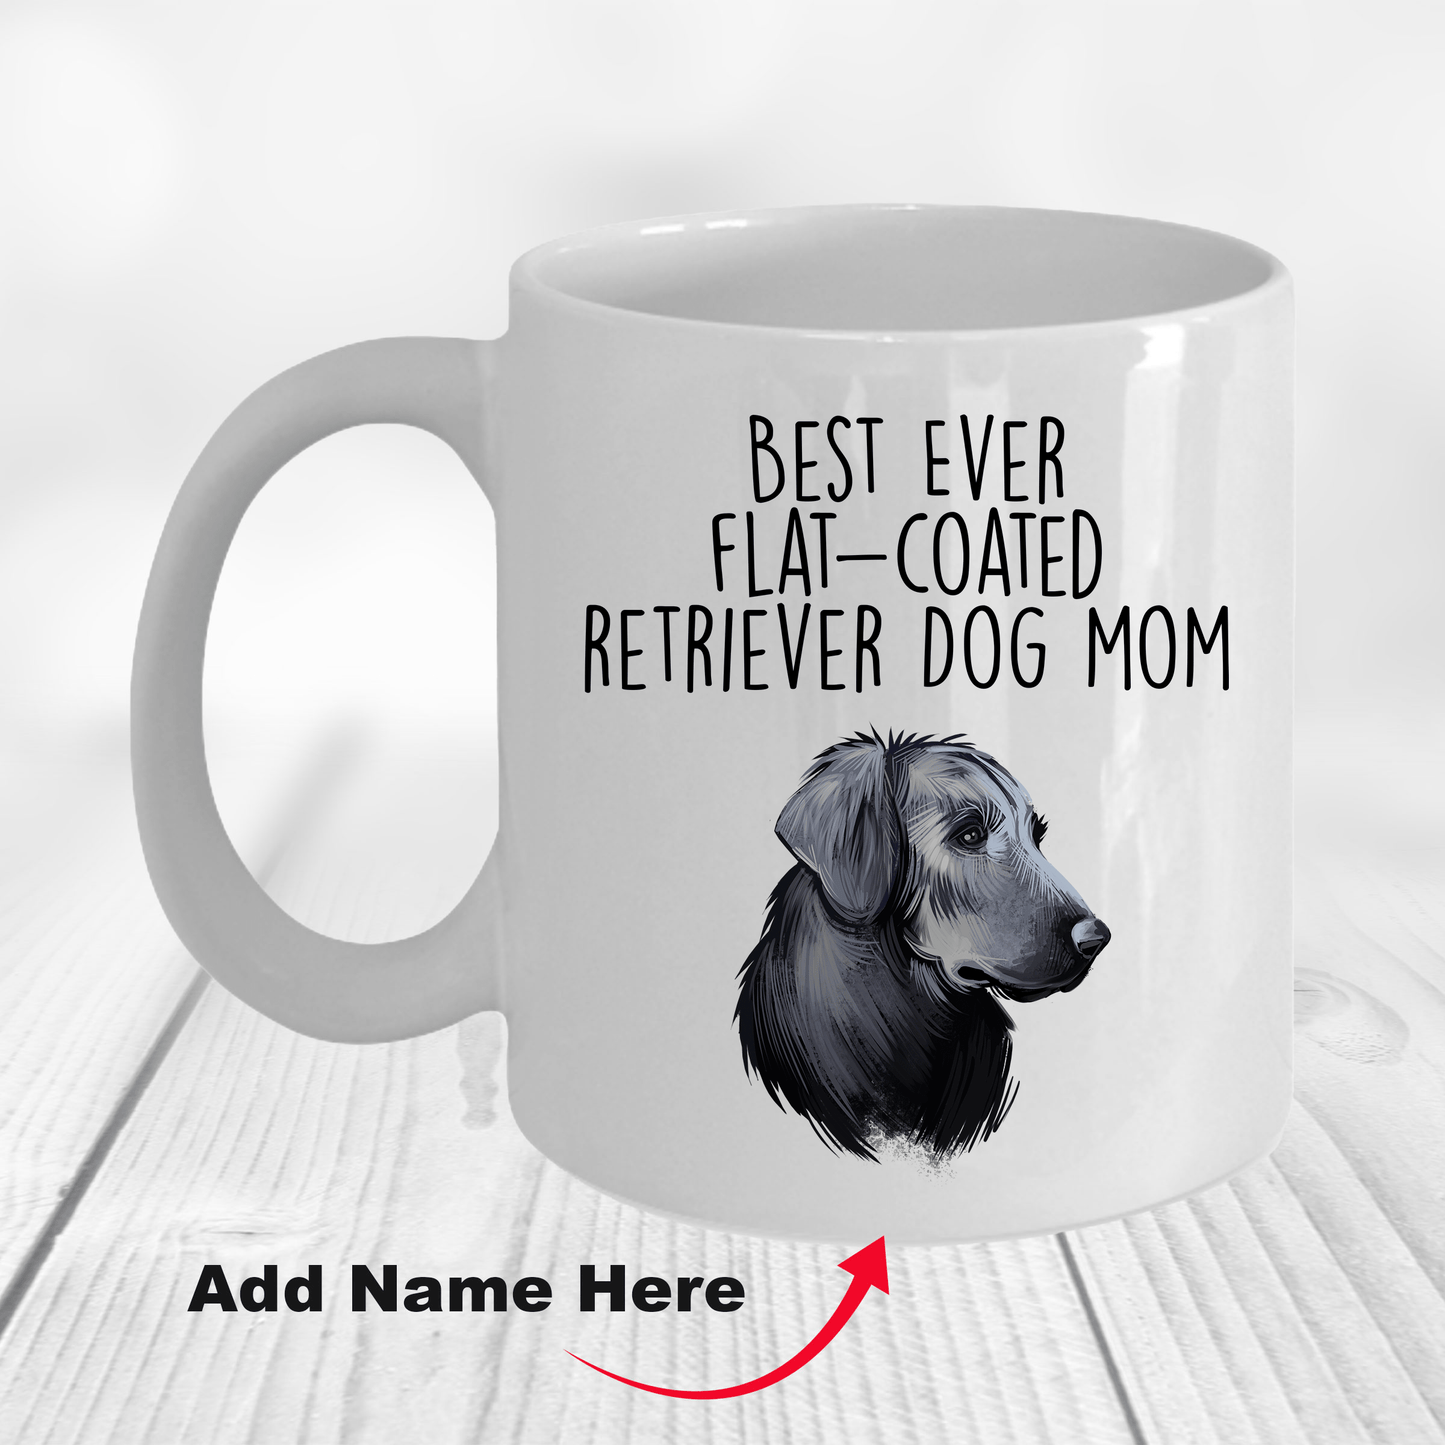 Best Ever Flat-Coated Retriever Dog Mom Ceramic Coffee Mug